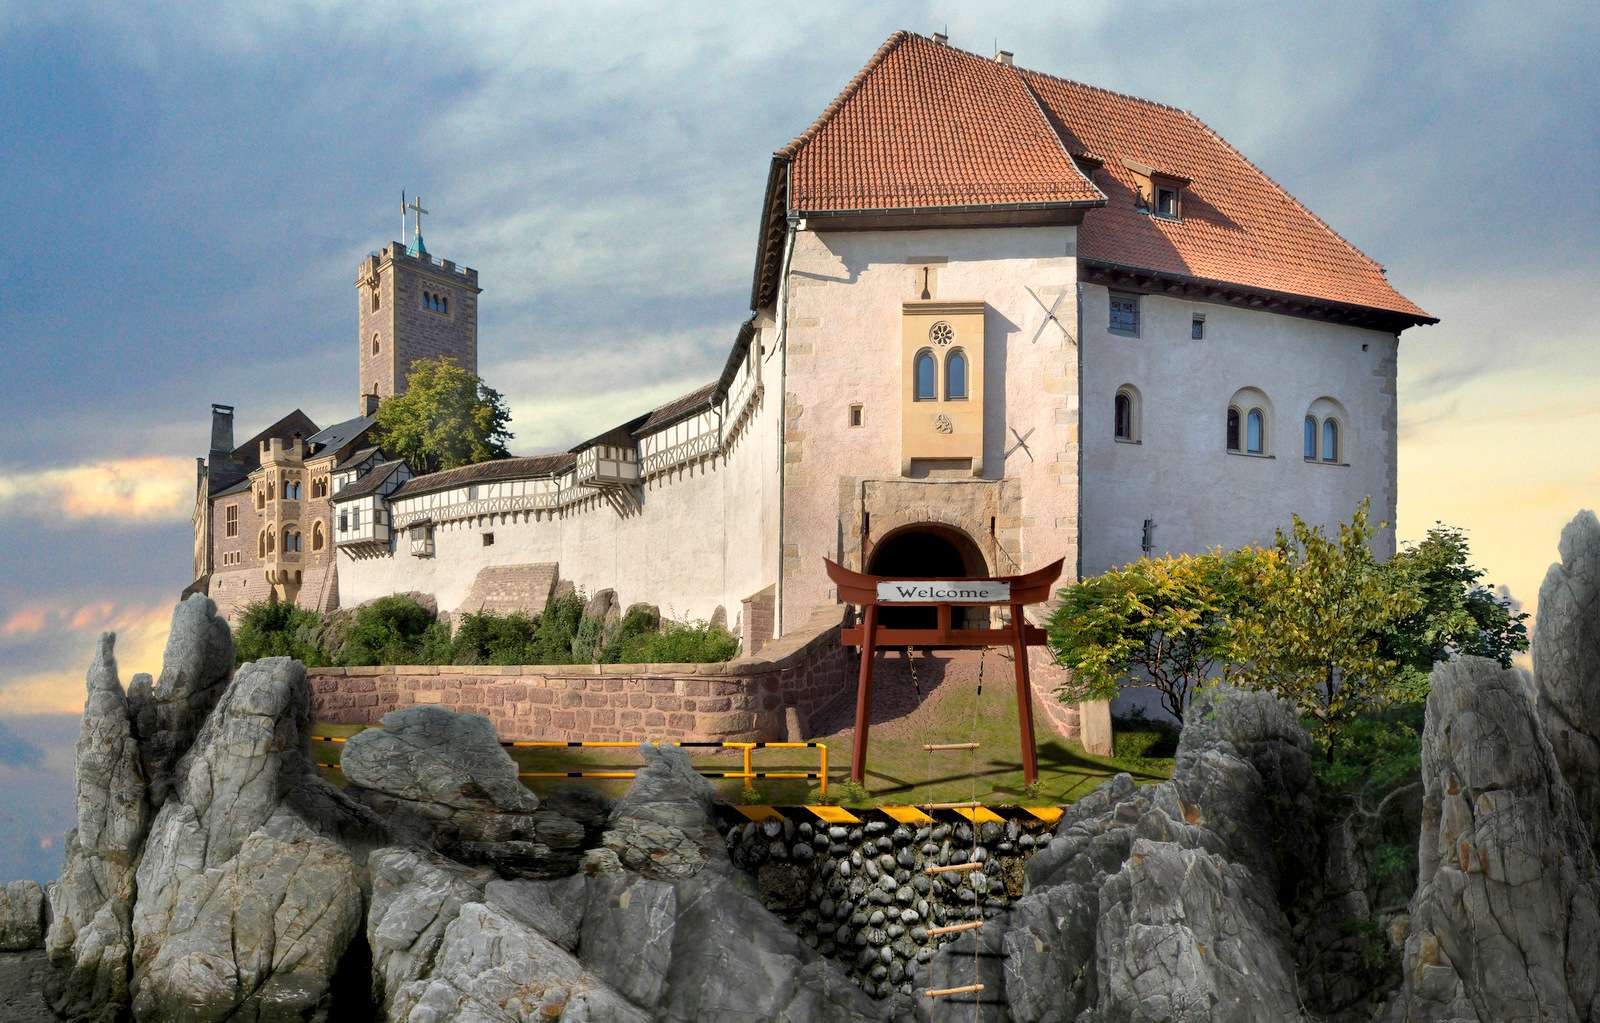 アイゼナハの絵のように美しいヴァルトブルク城 オンラインパズル